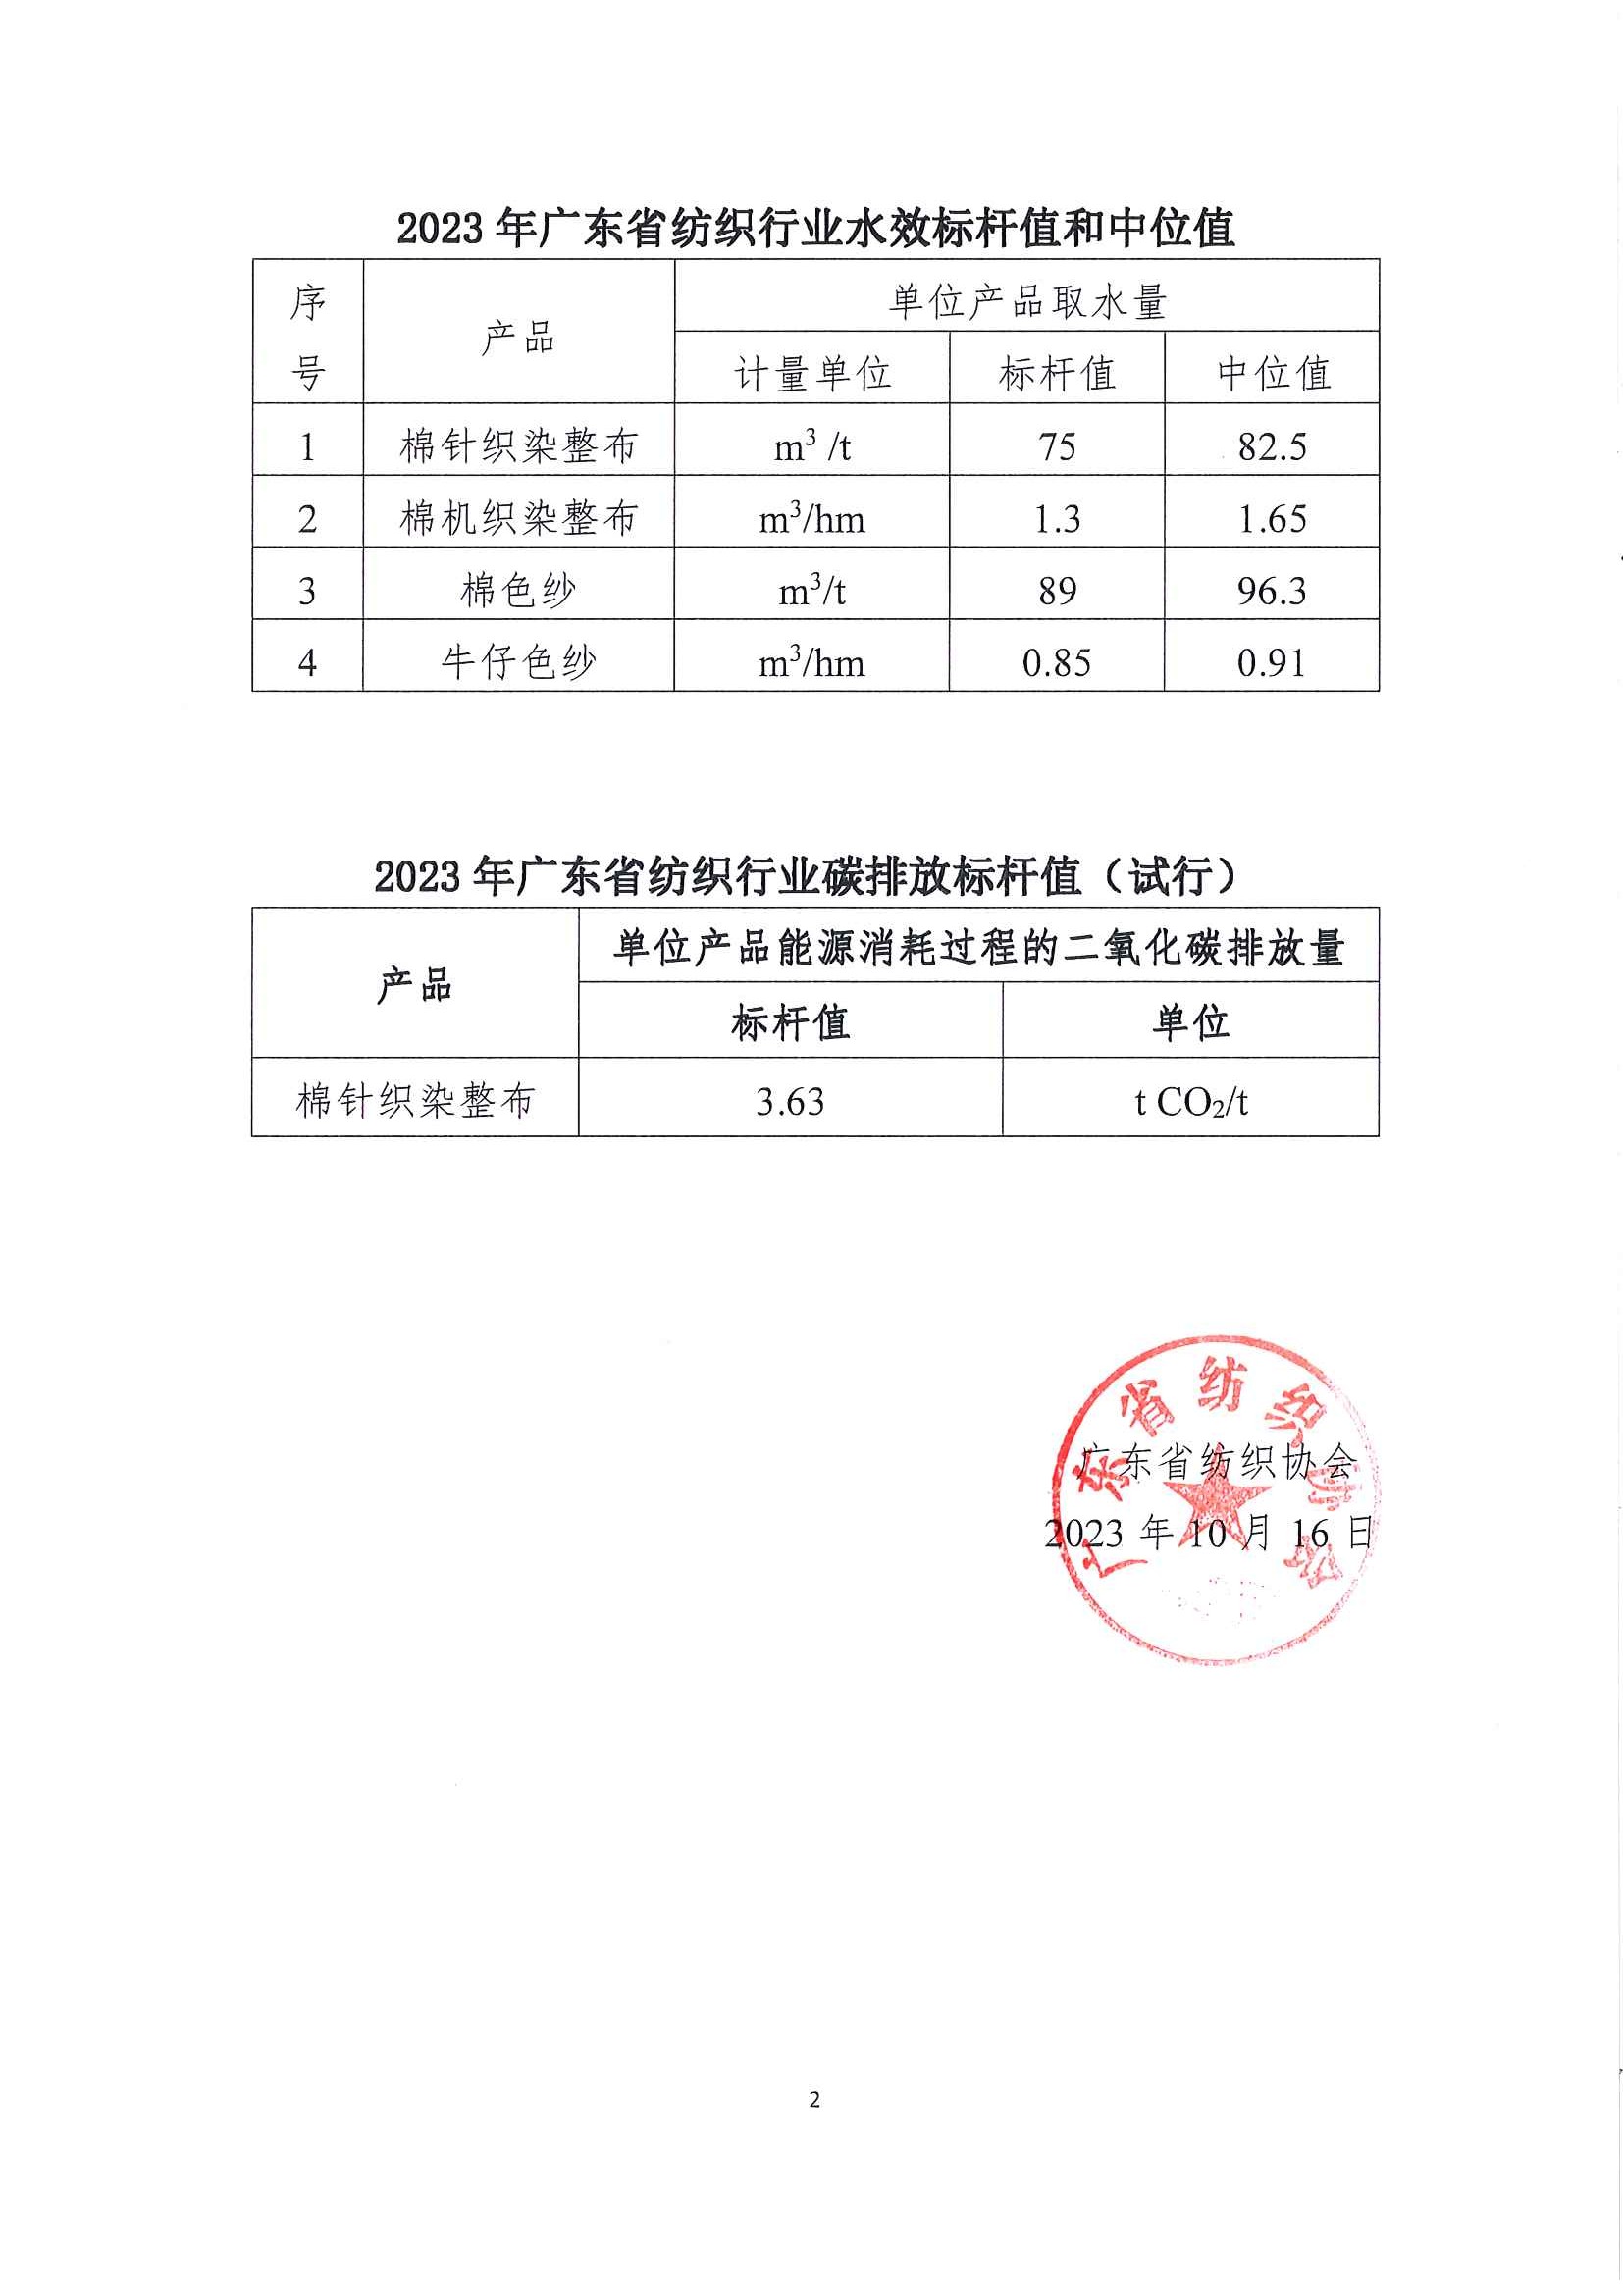 关于2023年广东省纺织行业能效（水效）标杆值的公告_页面_2.jpg